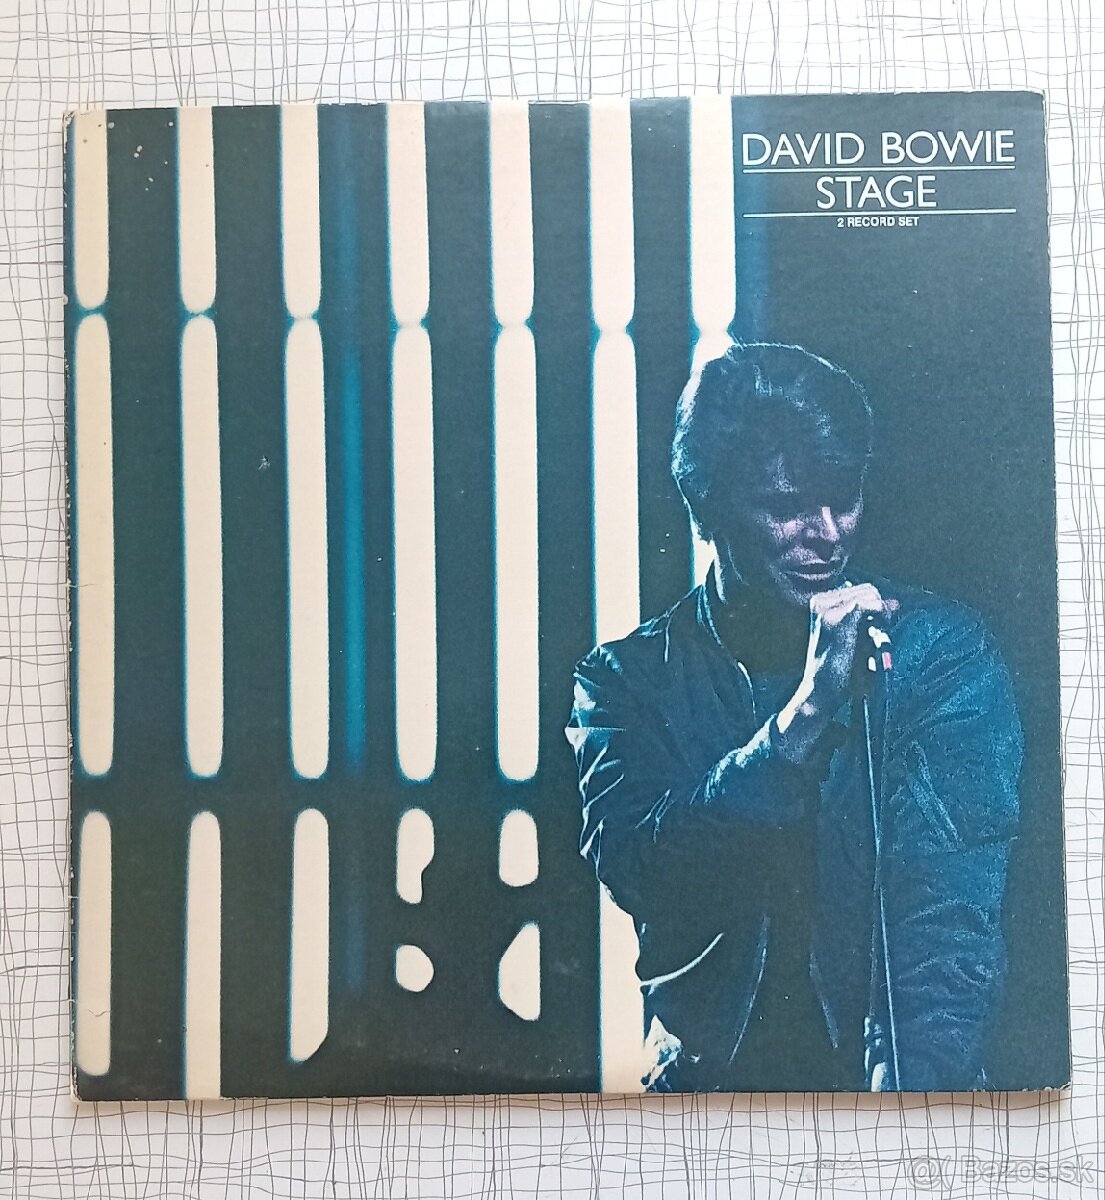 Lp platna: David Bowie Stage